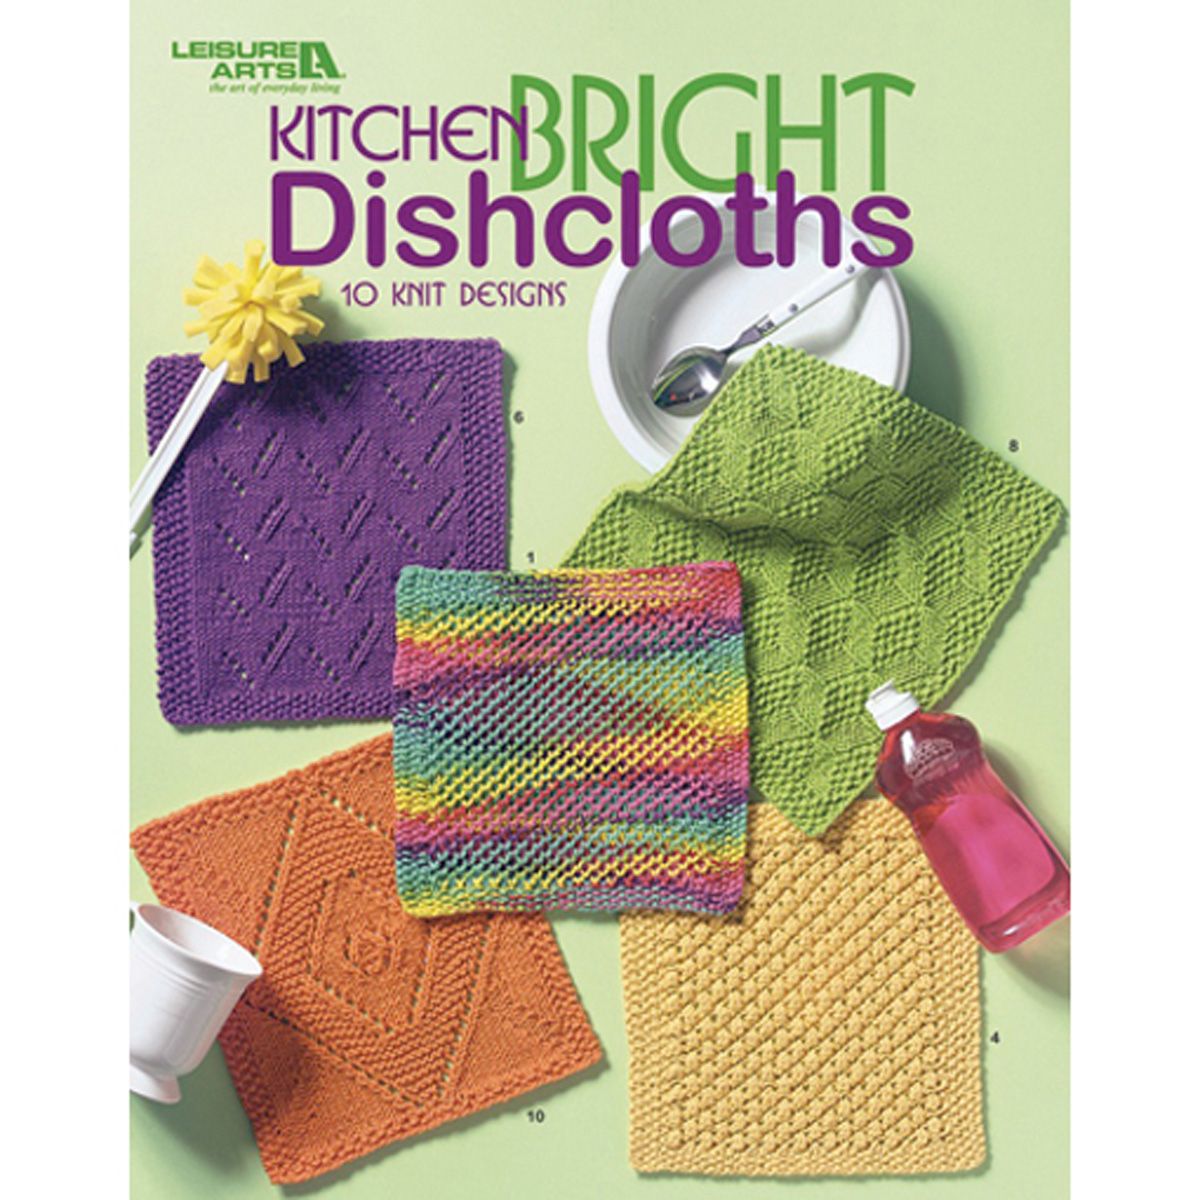 Leisure Arts-Kitchen Bright Dishcloths